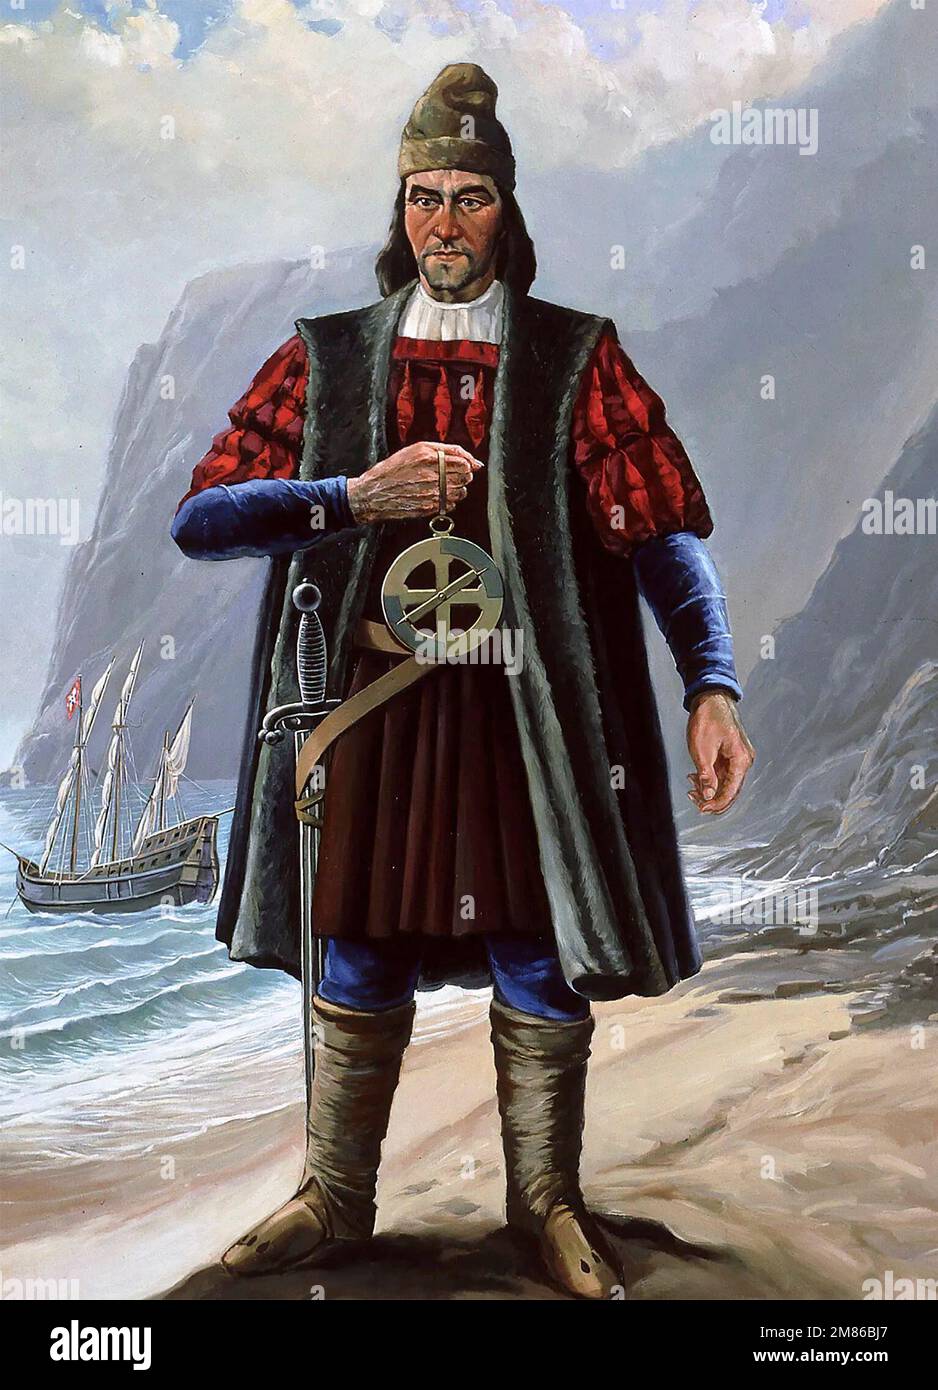 Bartolomeu Dias. Ritratto dell'esploratore e marinaio portoghese, Bartolomeu Dias (1450-1500). Dias fu la prima persona a navigare intorno alla punta meridionale dell'Africa nel 1488. Foto Stock